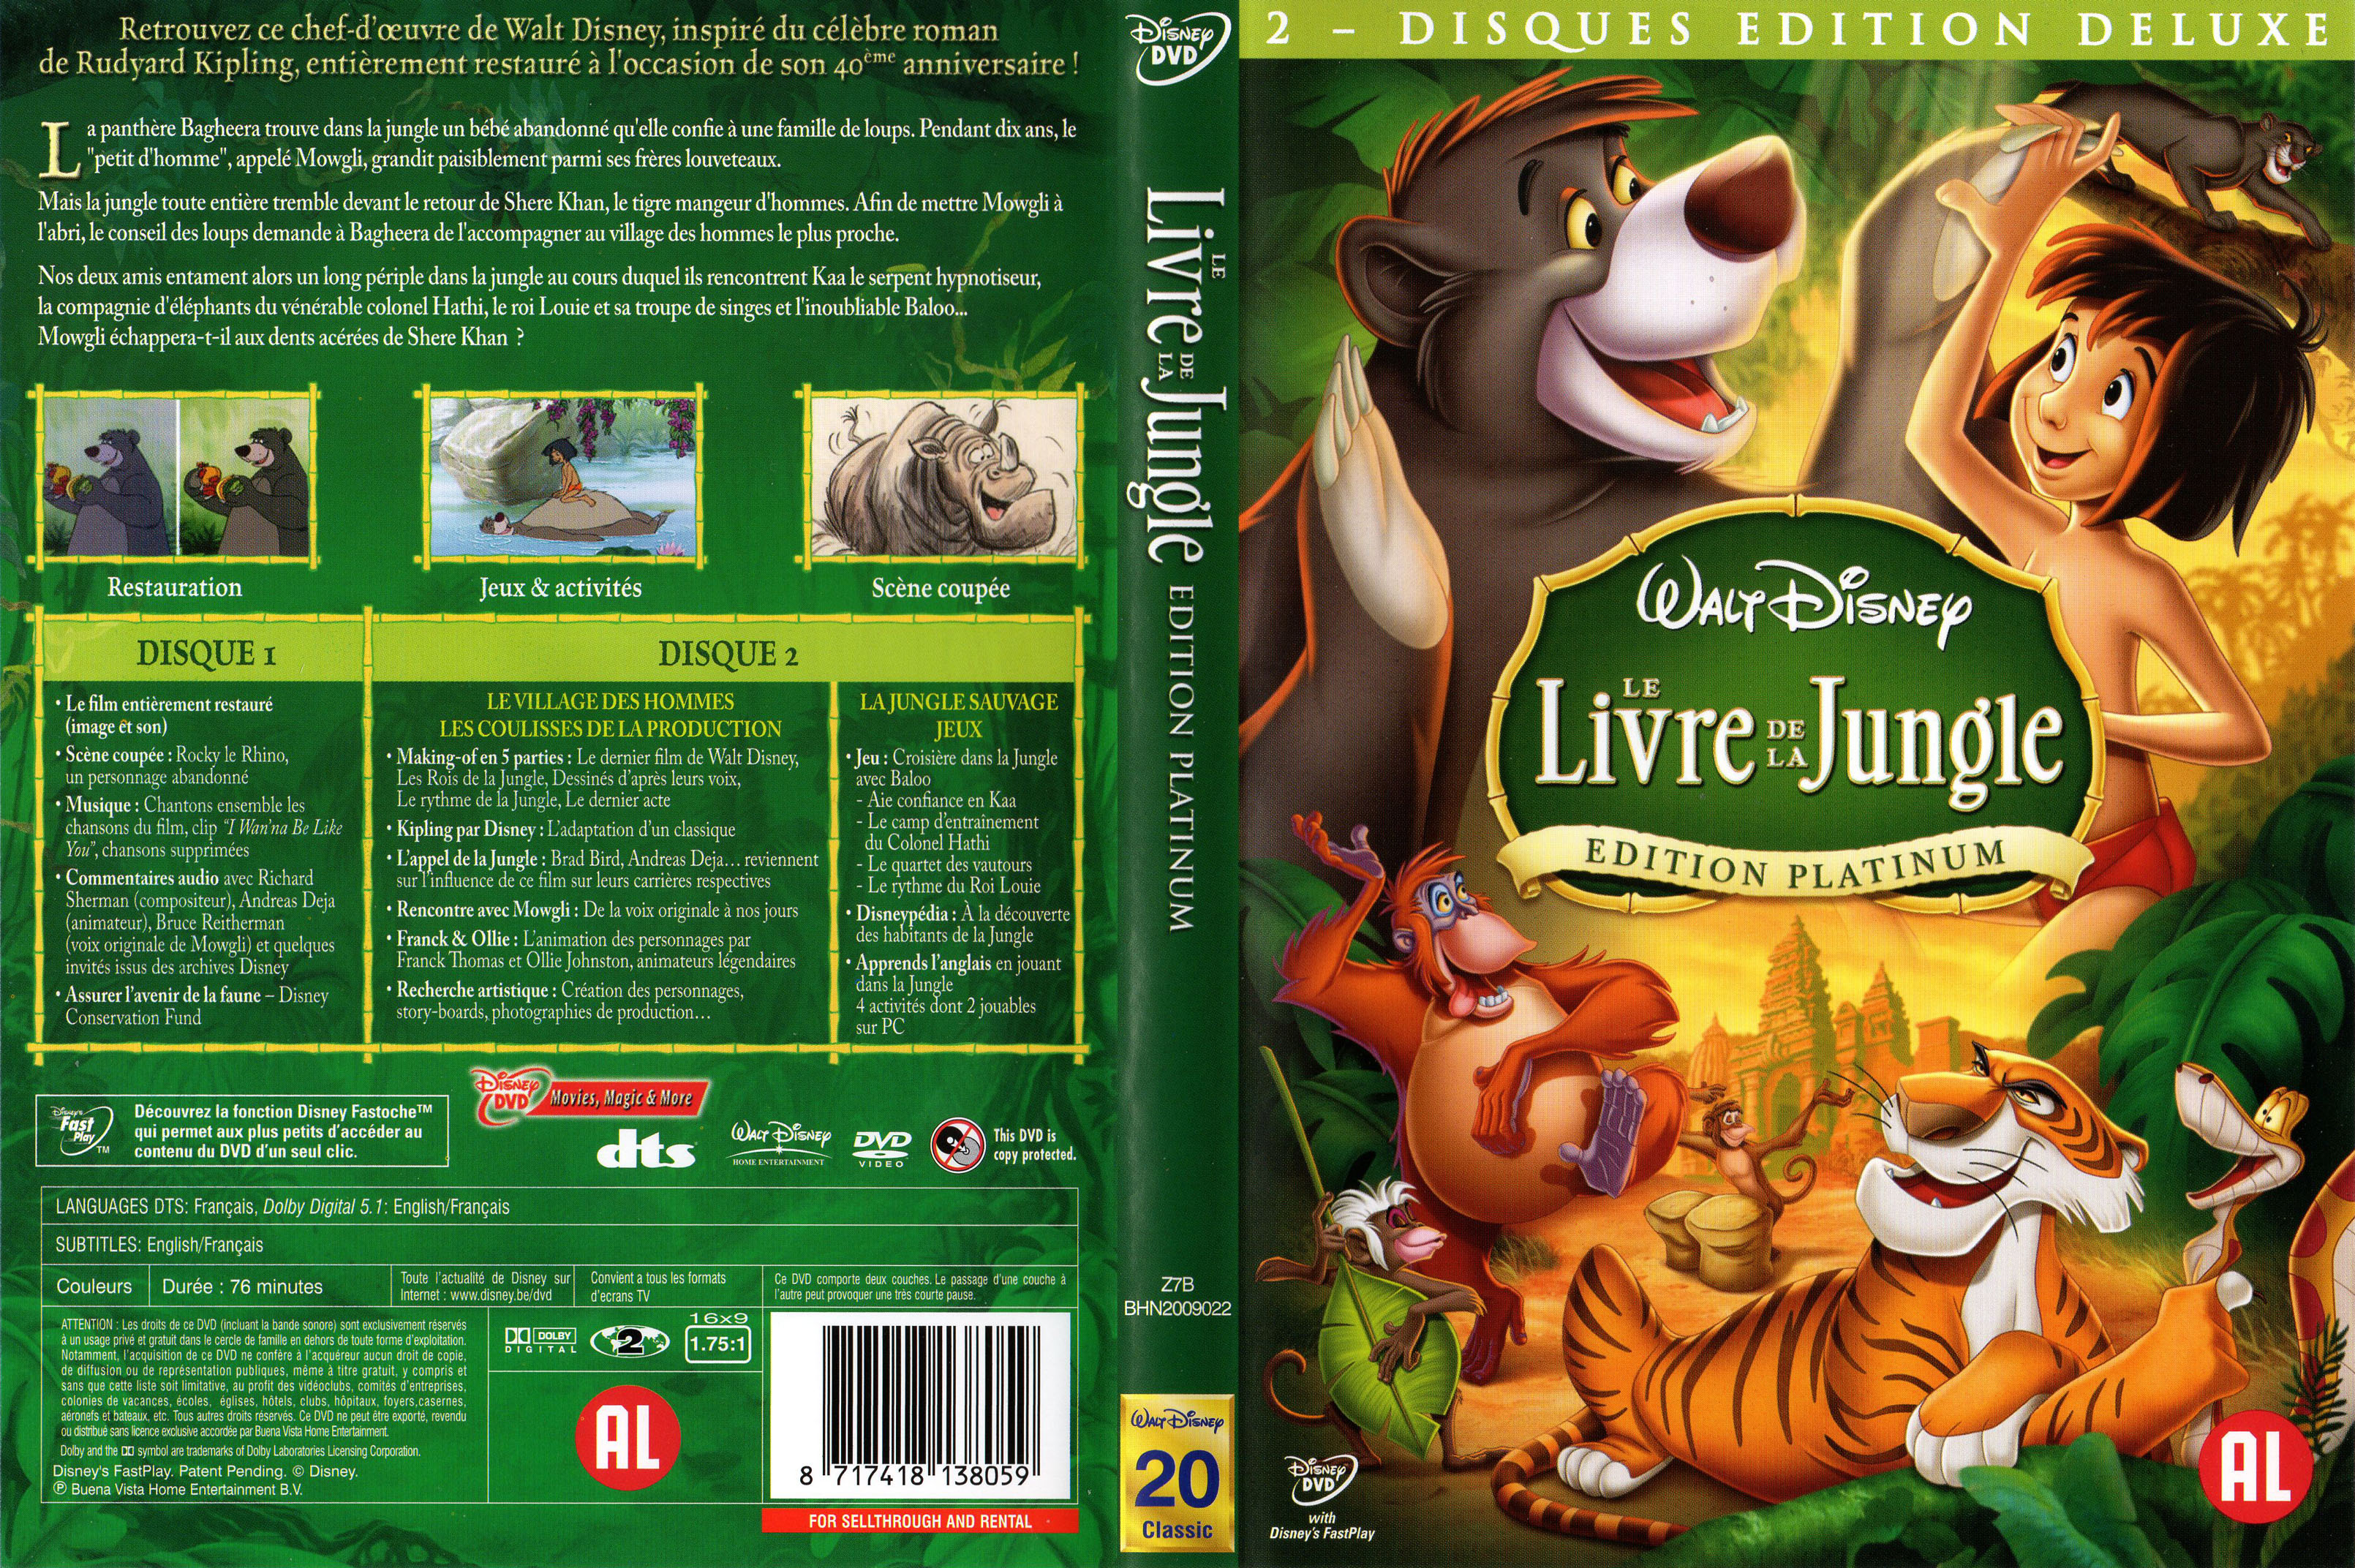 Jaquette DVD Le livre de la jungle v3